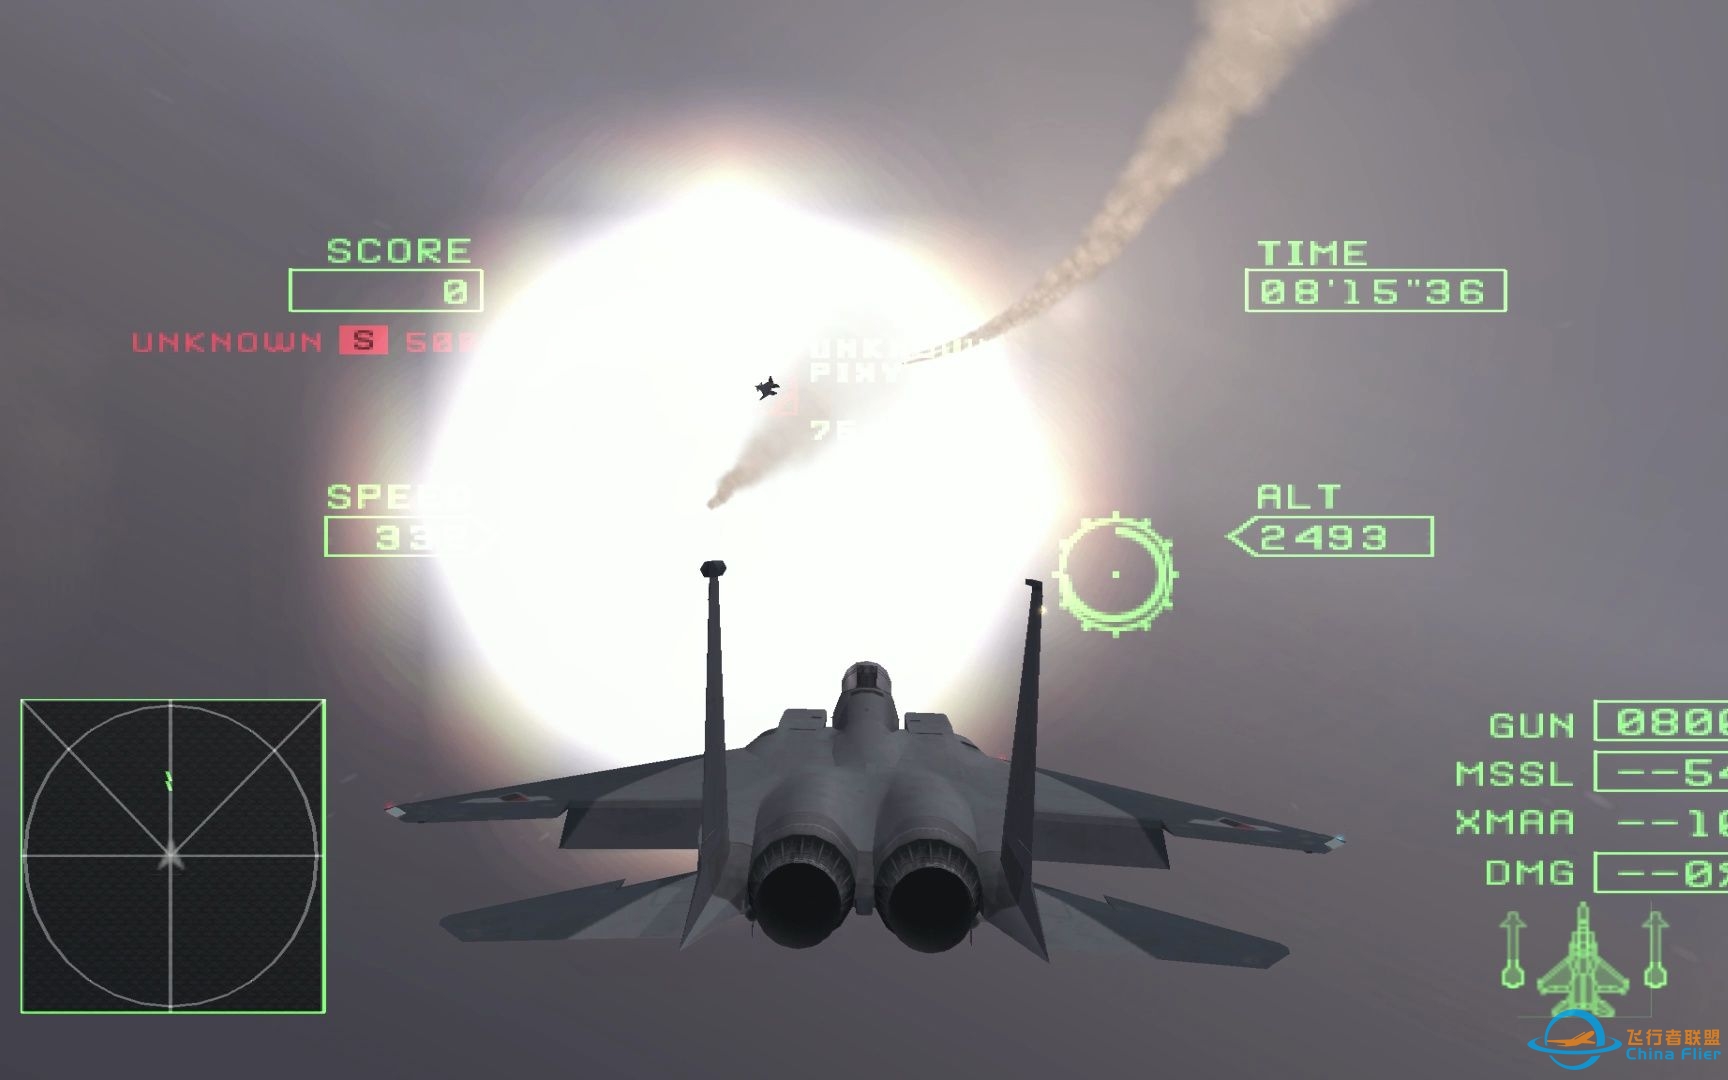 皇牌空战0 4K超高清完美模拟 有云爆炸效果正常 支持皇牌空战5-4919 